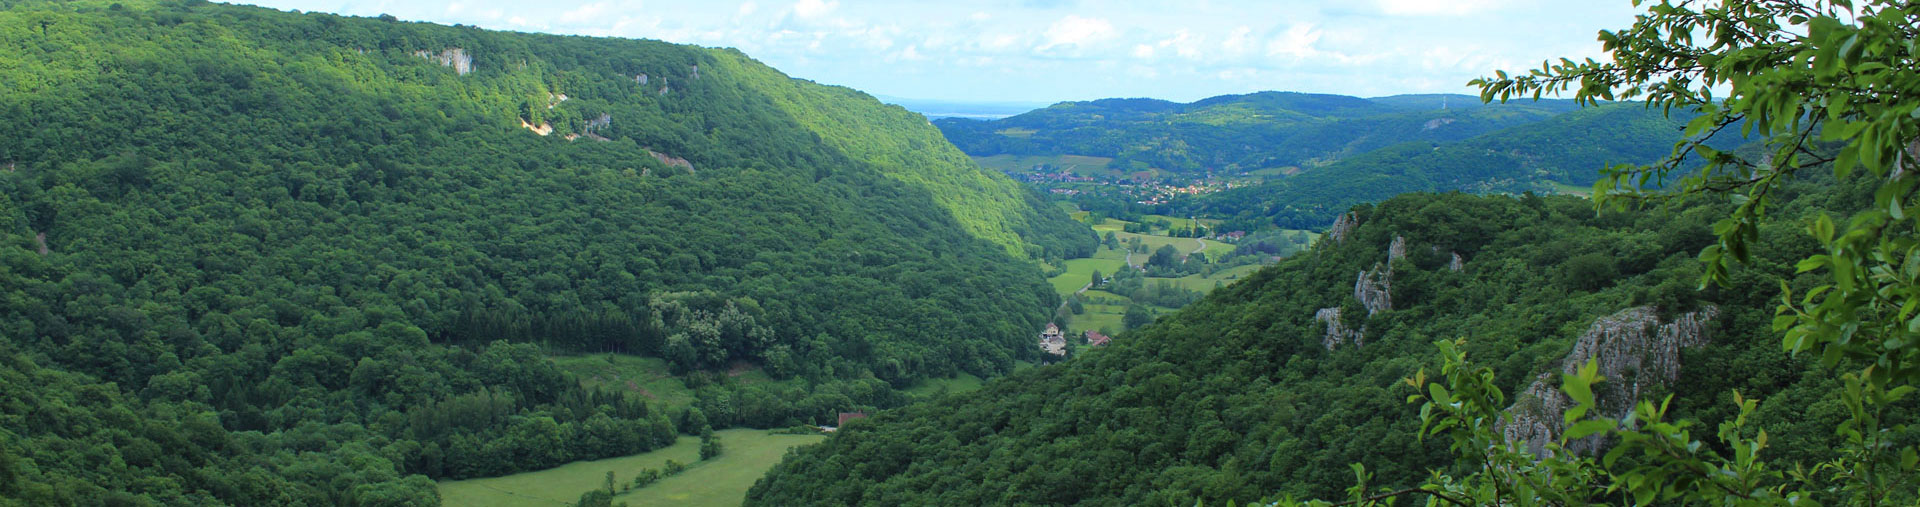 Patrimoine Culturel et Géologique au coeur du Jura et du Haut-Doubs - Troisième image